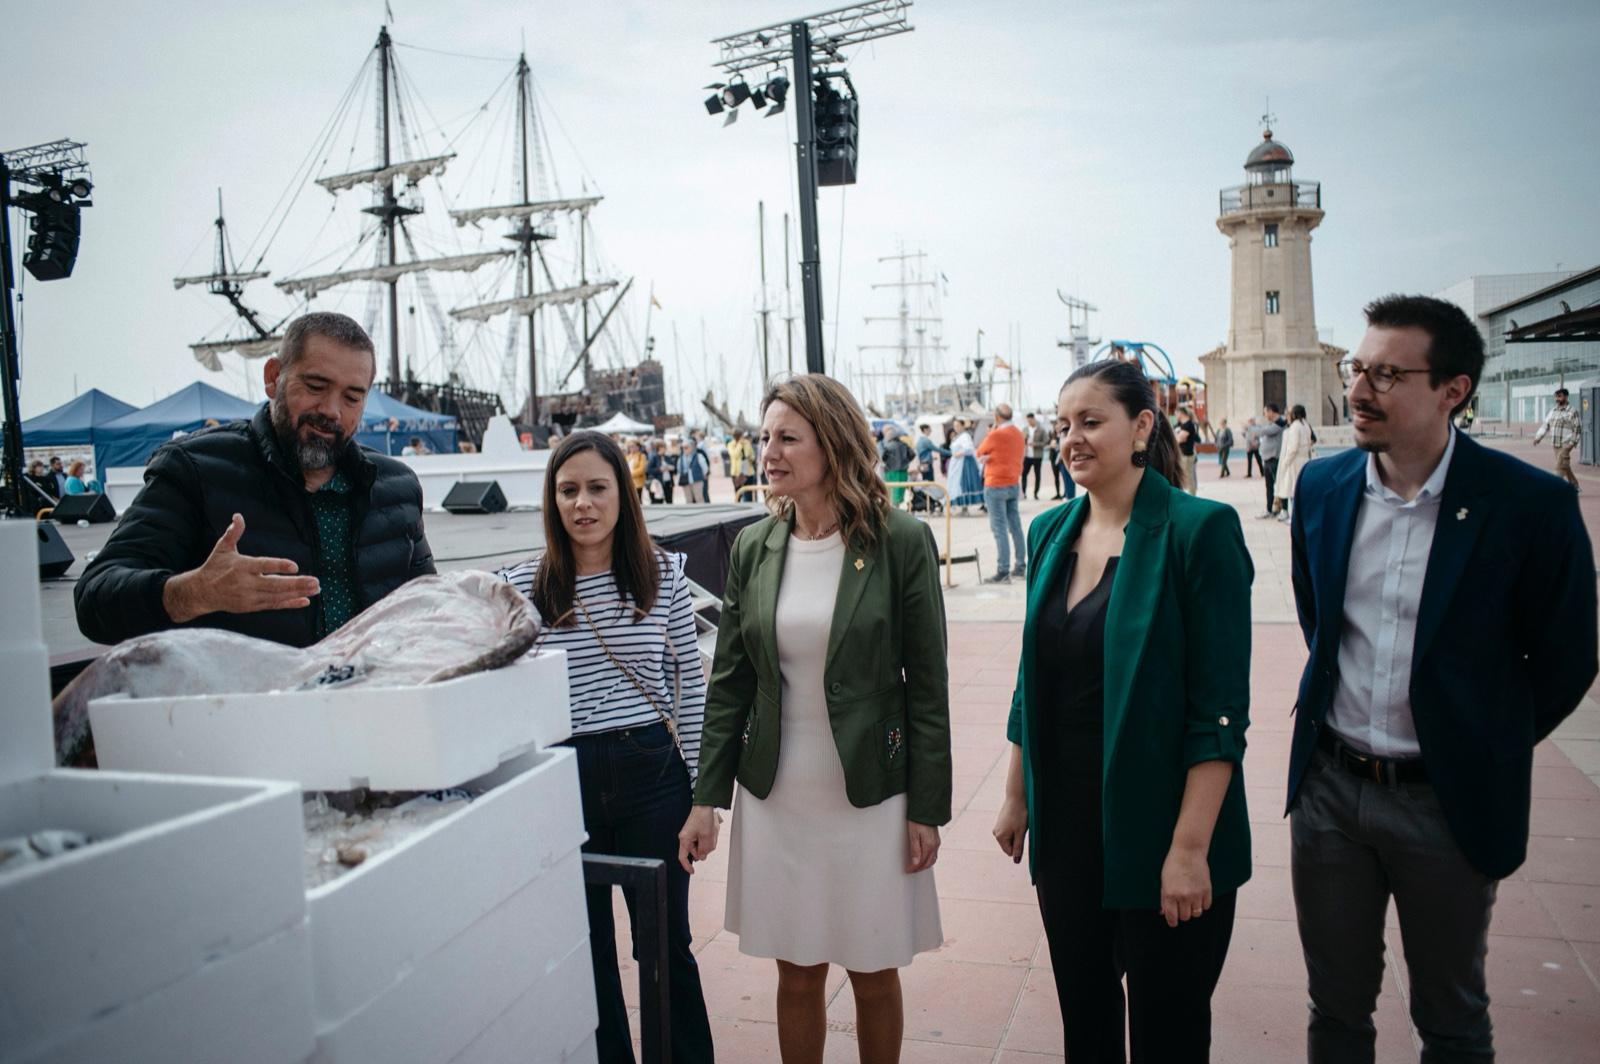 Carrasco: “Els comerços del Grau participen per primera vegada en l'esdeveniment Escala a Castelló a través del Cap de setmana Mariner amb gran acceptació entre els visitants”